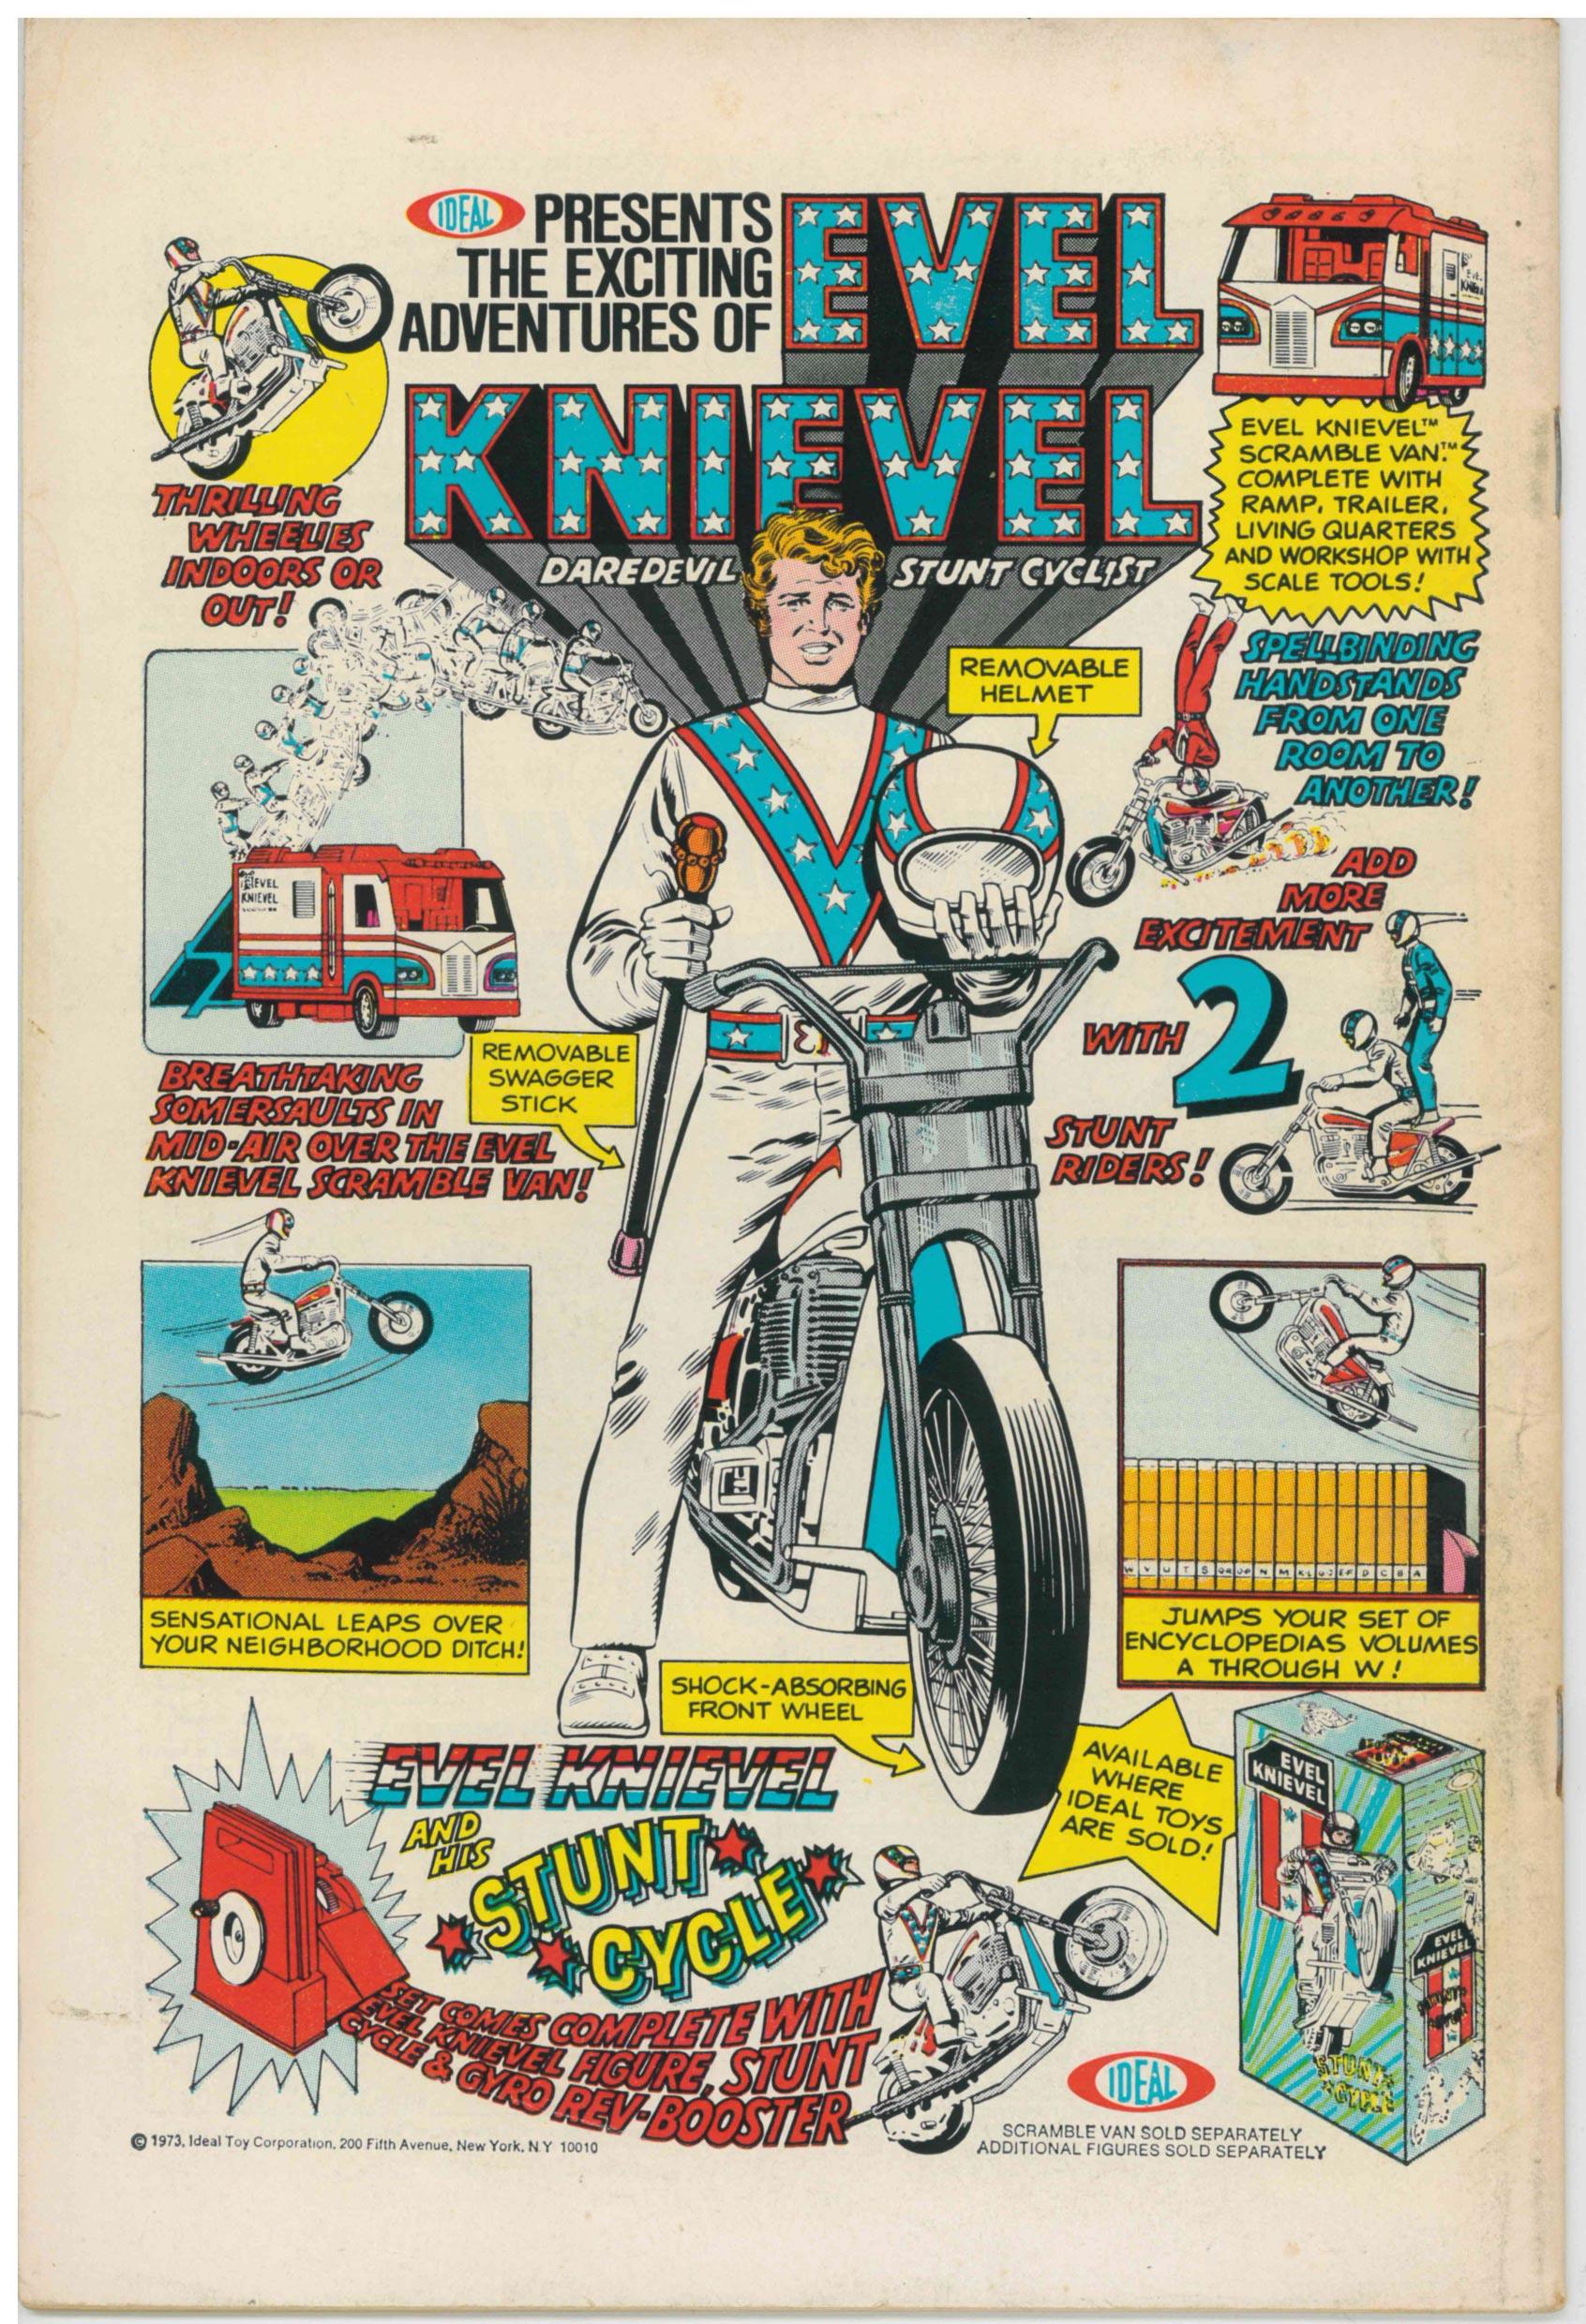 AVENGERS (1963) #119 (VG) - Kings Comics